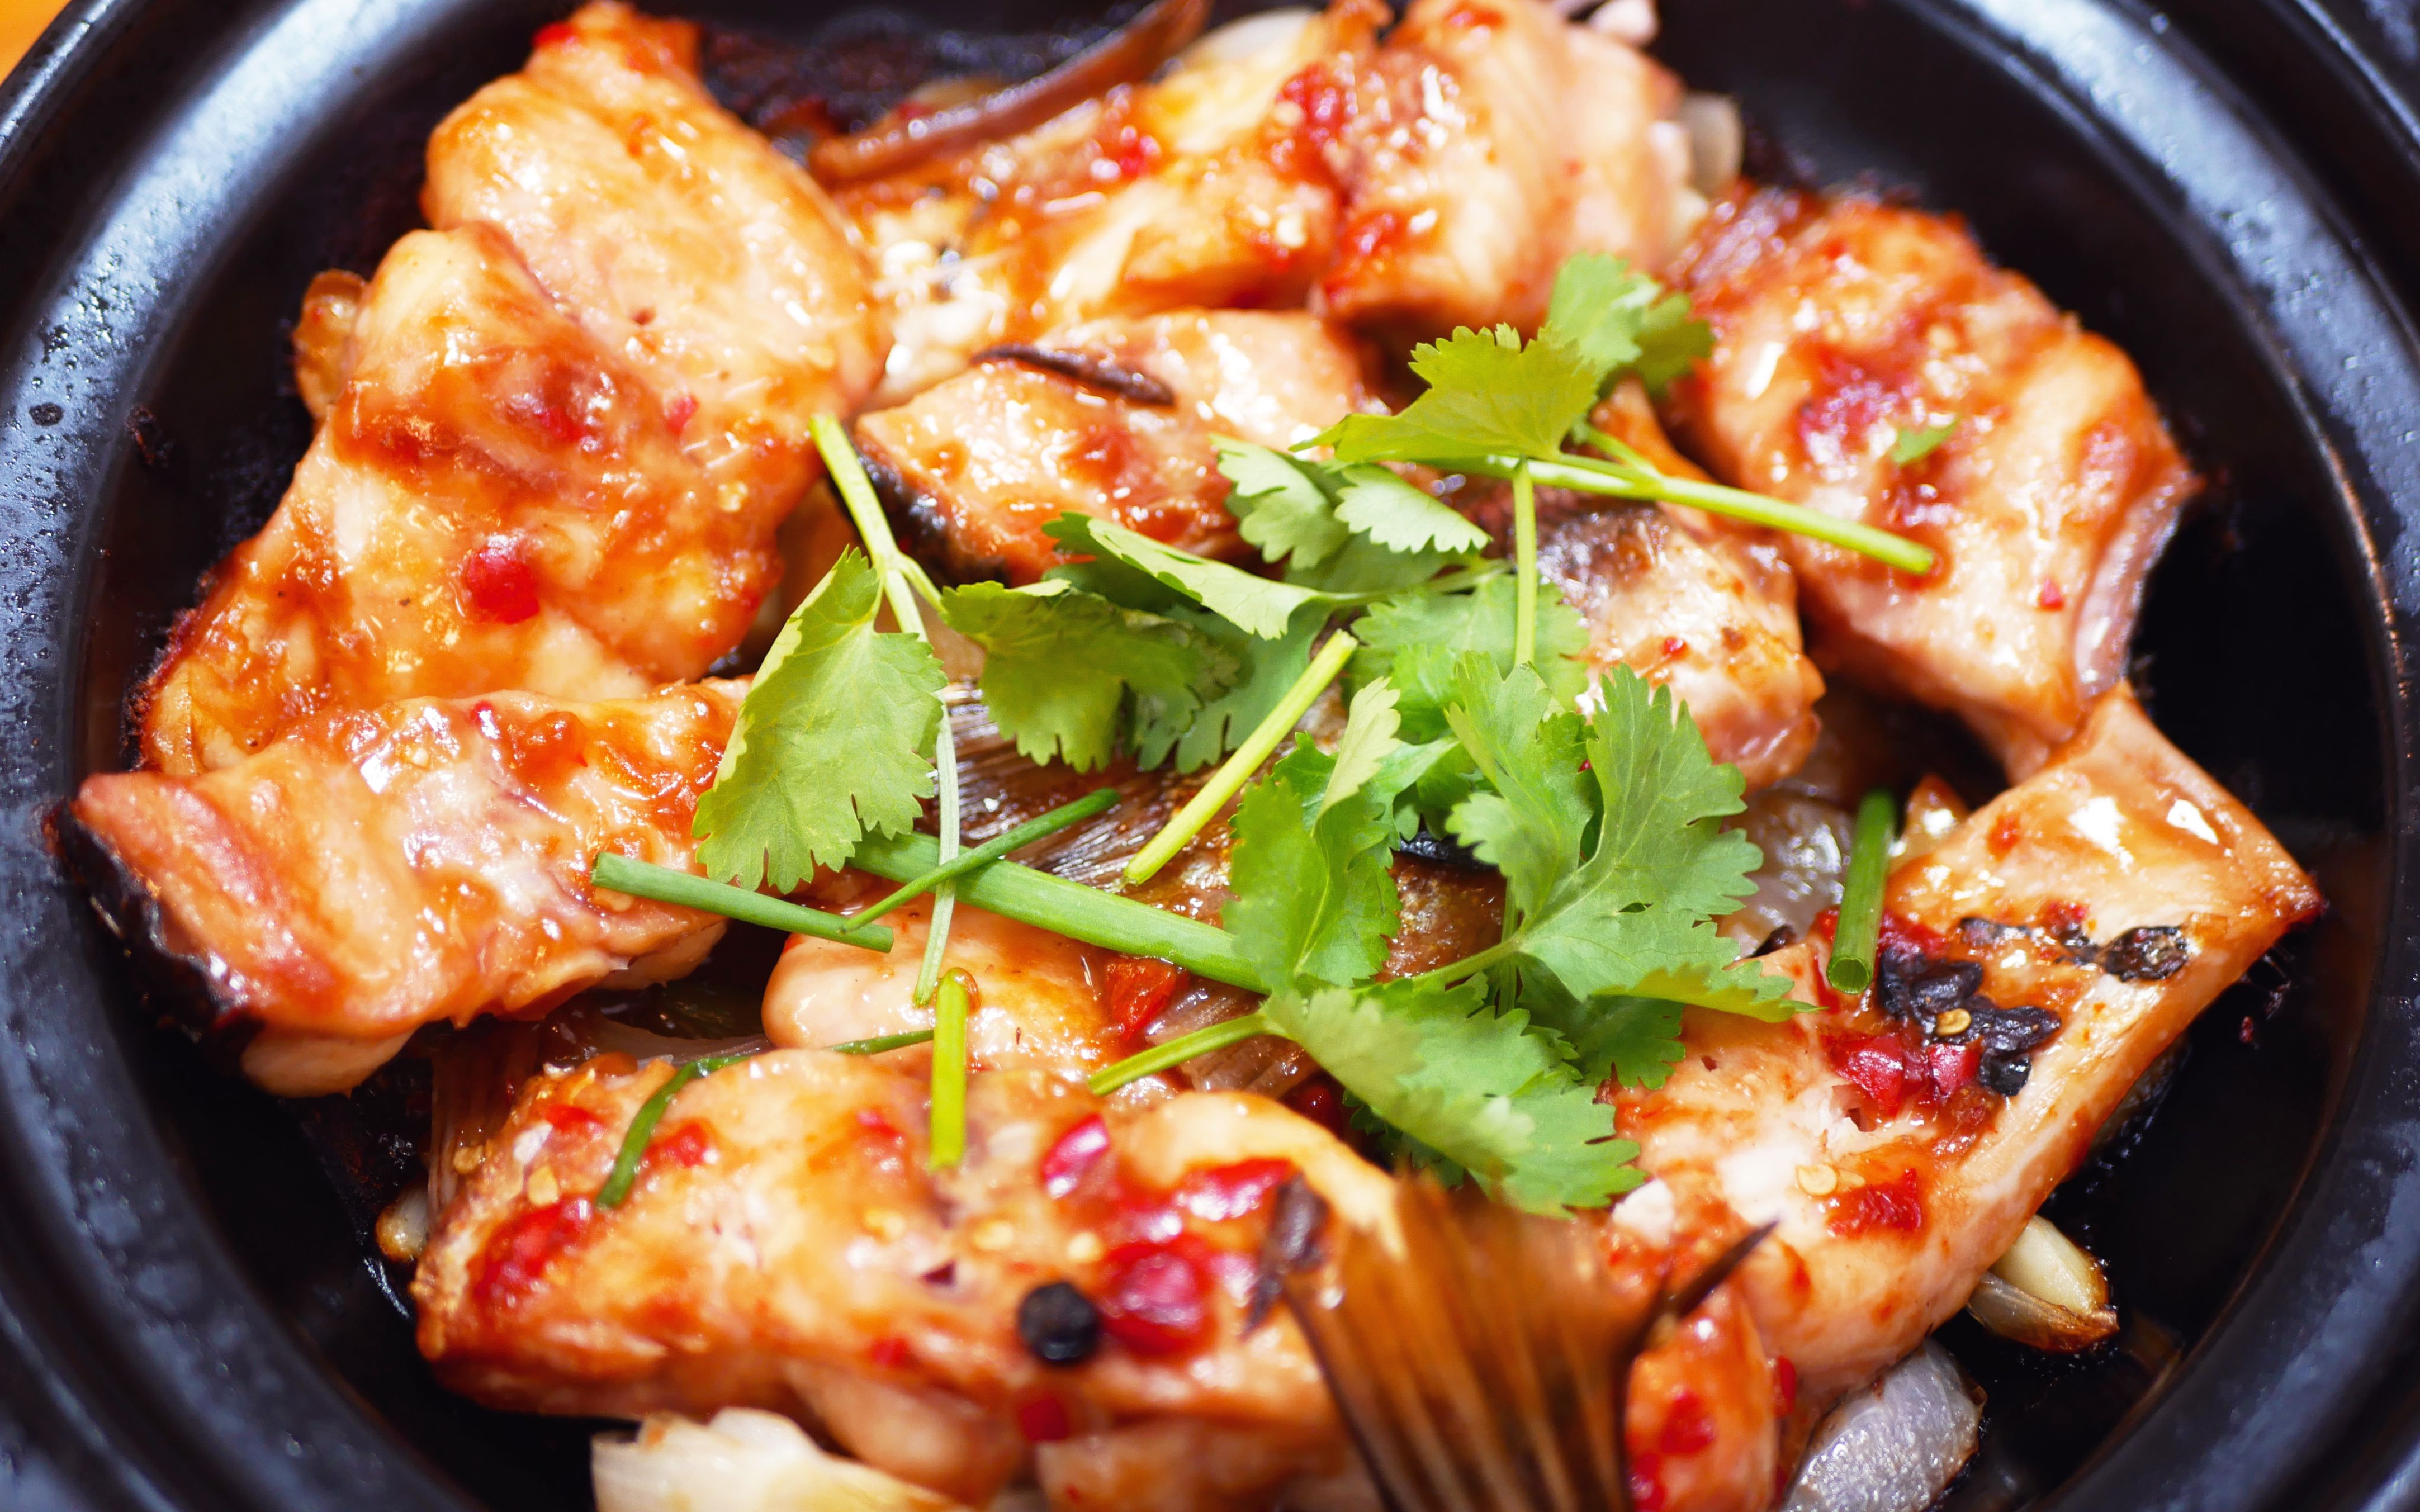 分享家常美食砂锅鱼腩煲的简单做法,鲜香嫩滑,汁浓味香!